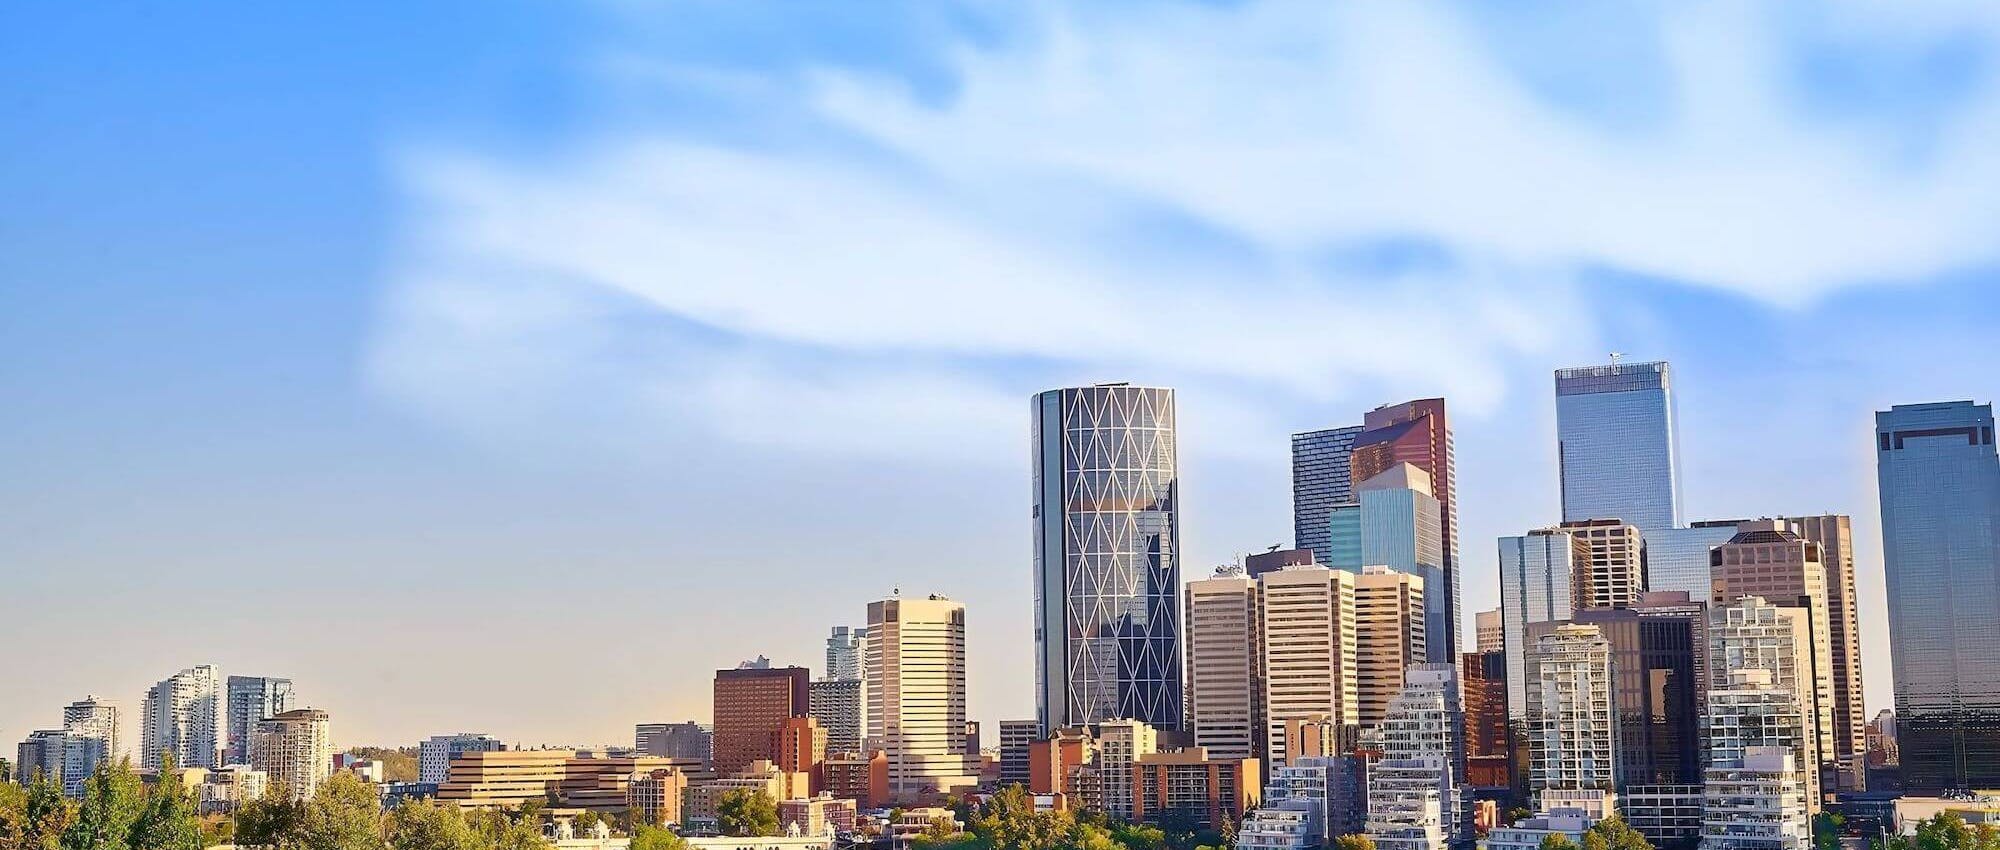 Calgary skyline under a blue sky, centered on the Bow Tower.